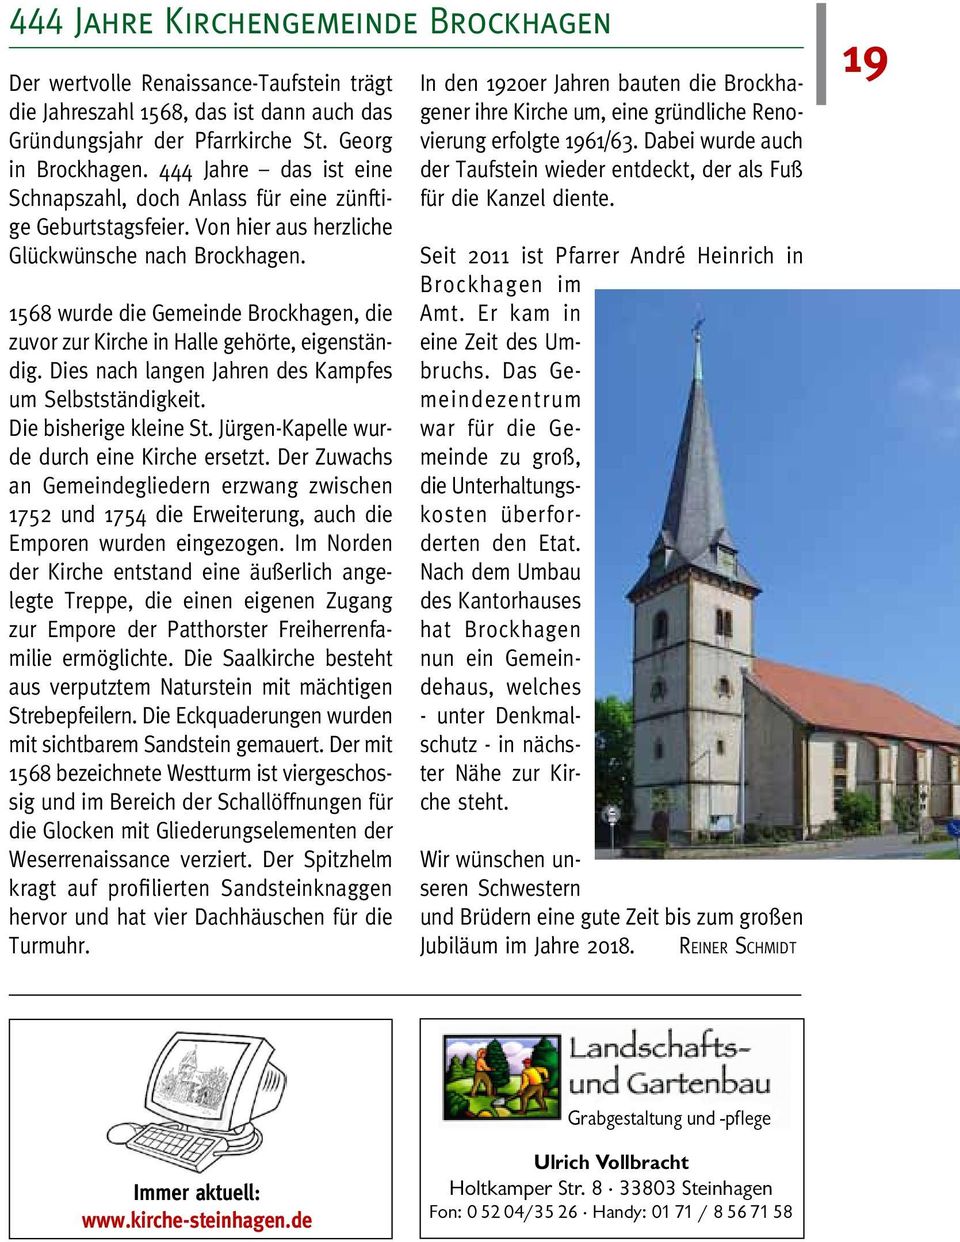 1568 wurde die Gemeinde Brockhagen, die zuvor zur Kirche in Halle gehörte, eigenständig. Dies nach langen Jahren des Kampfes um Selbstständigkeit. Die bisherige kleine St.